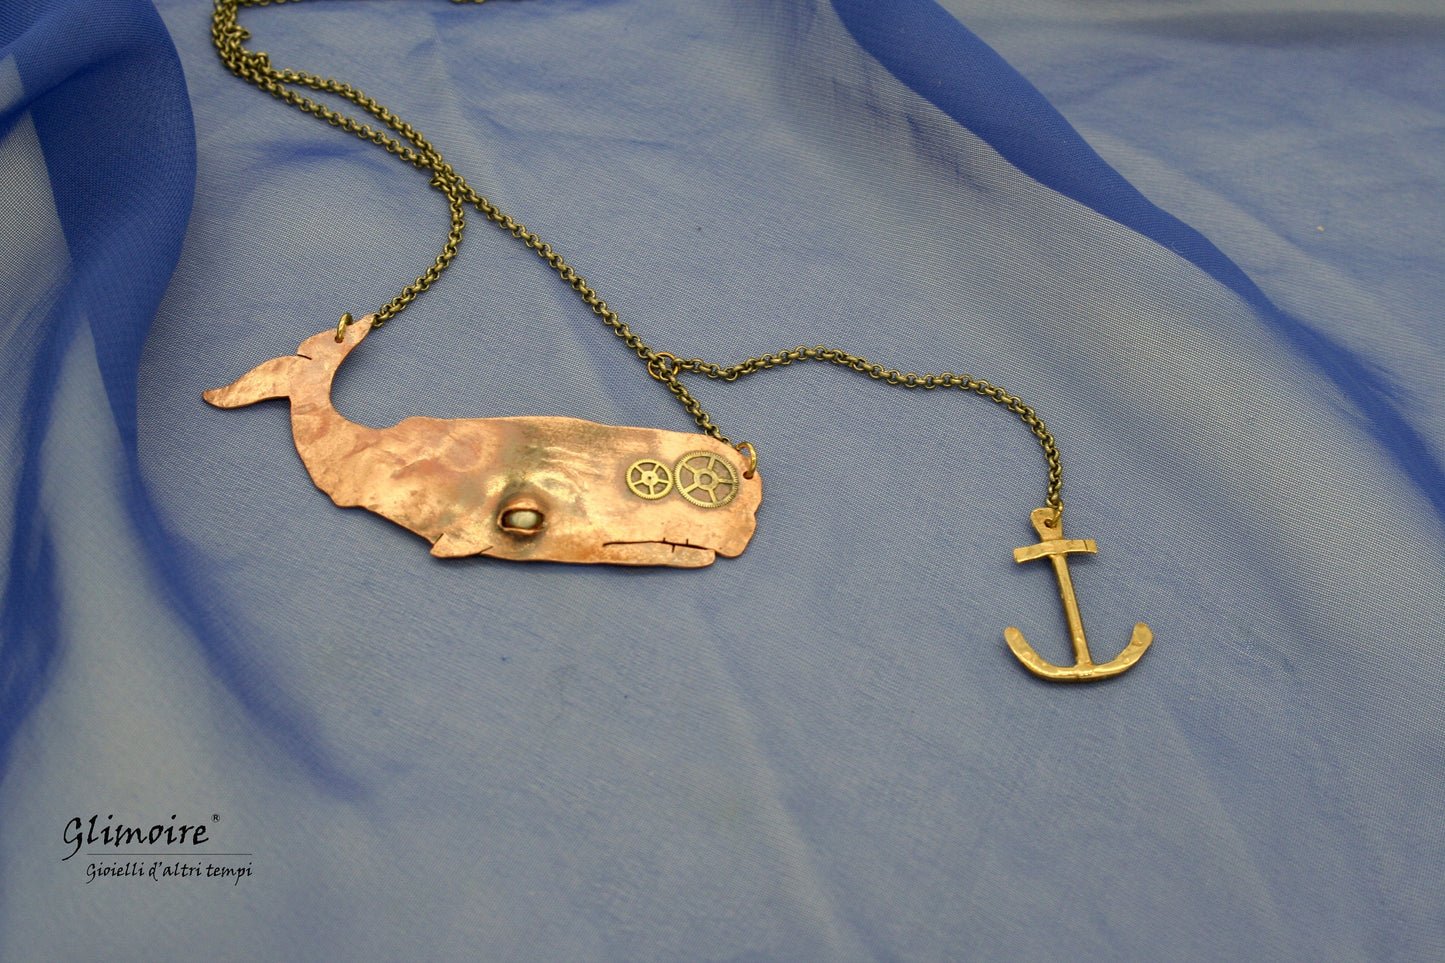 Balena in rame battuto con ingranaggi e ancora in ottone- Moby Dick (art.85) - Glimoire